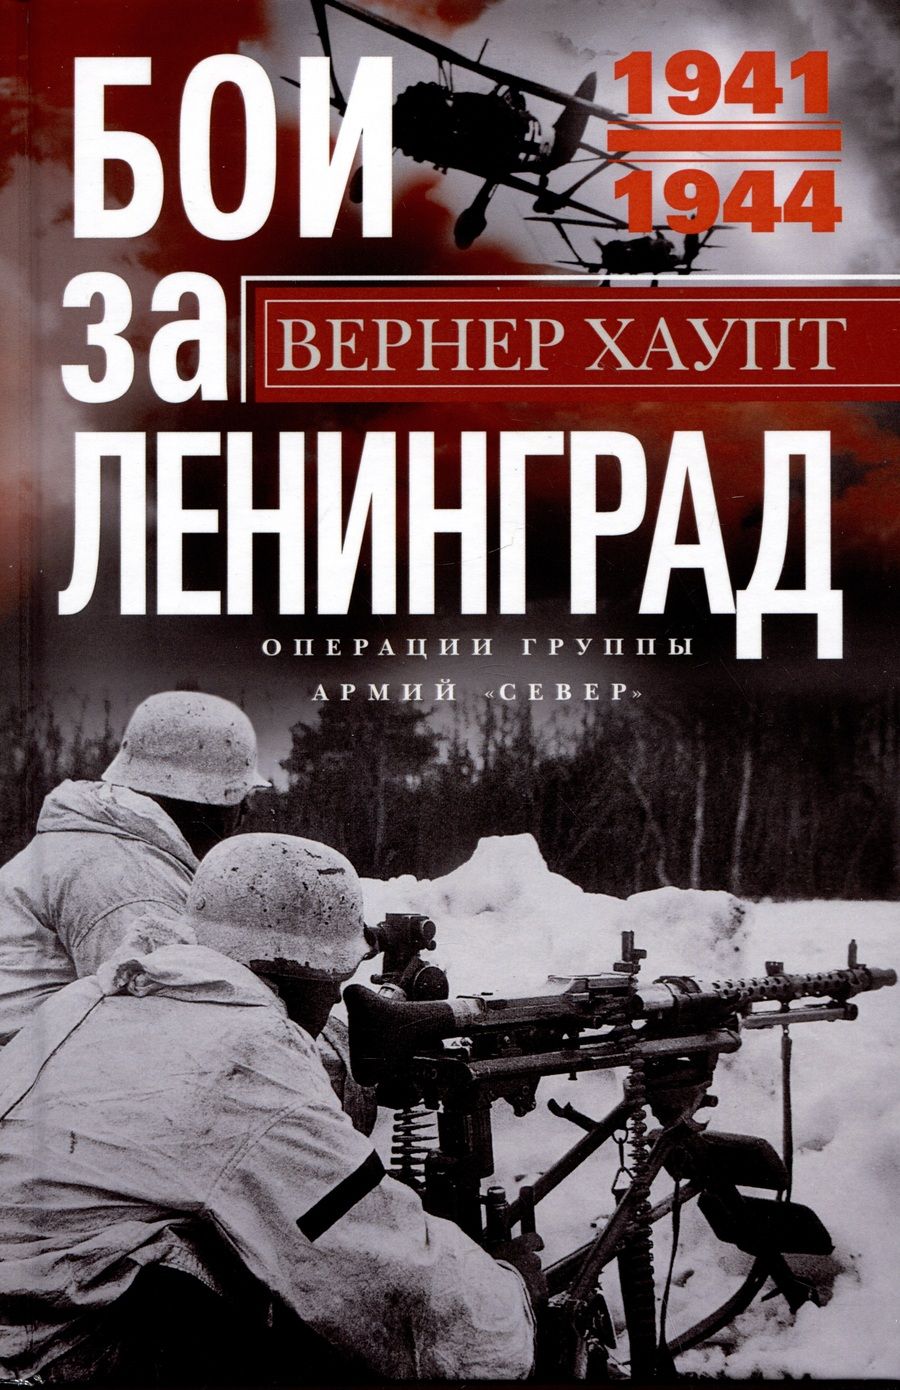 Обложка книги "Хаупт: Бои за Ленинград. Операции группы армий «Север»"